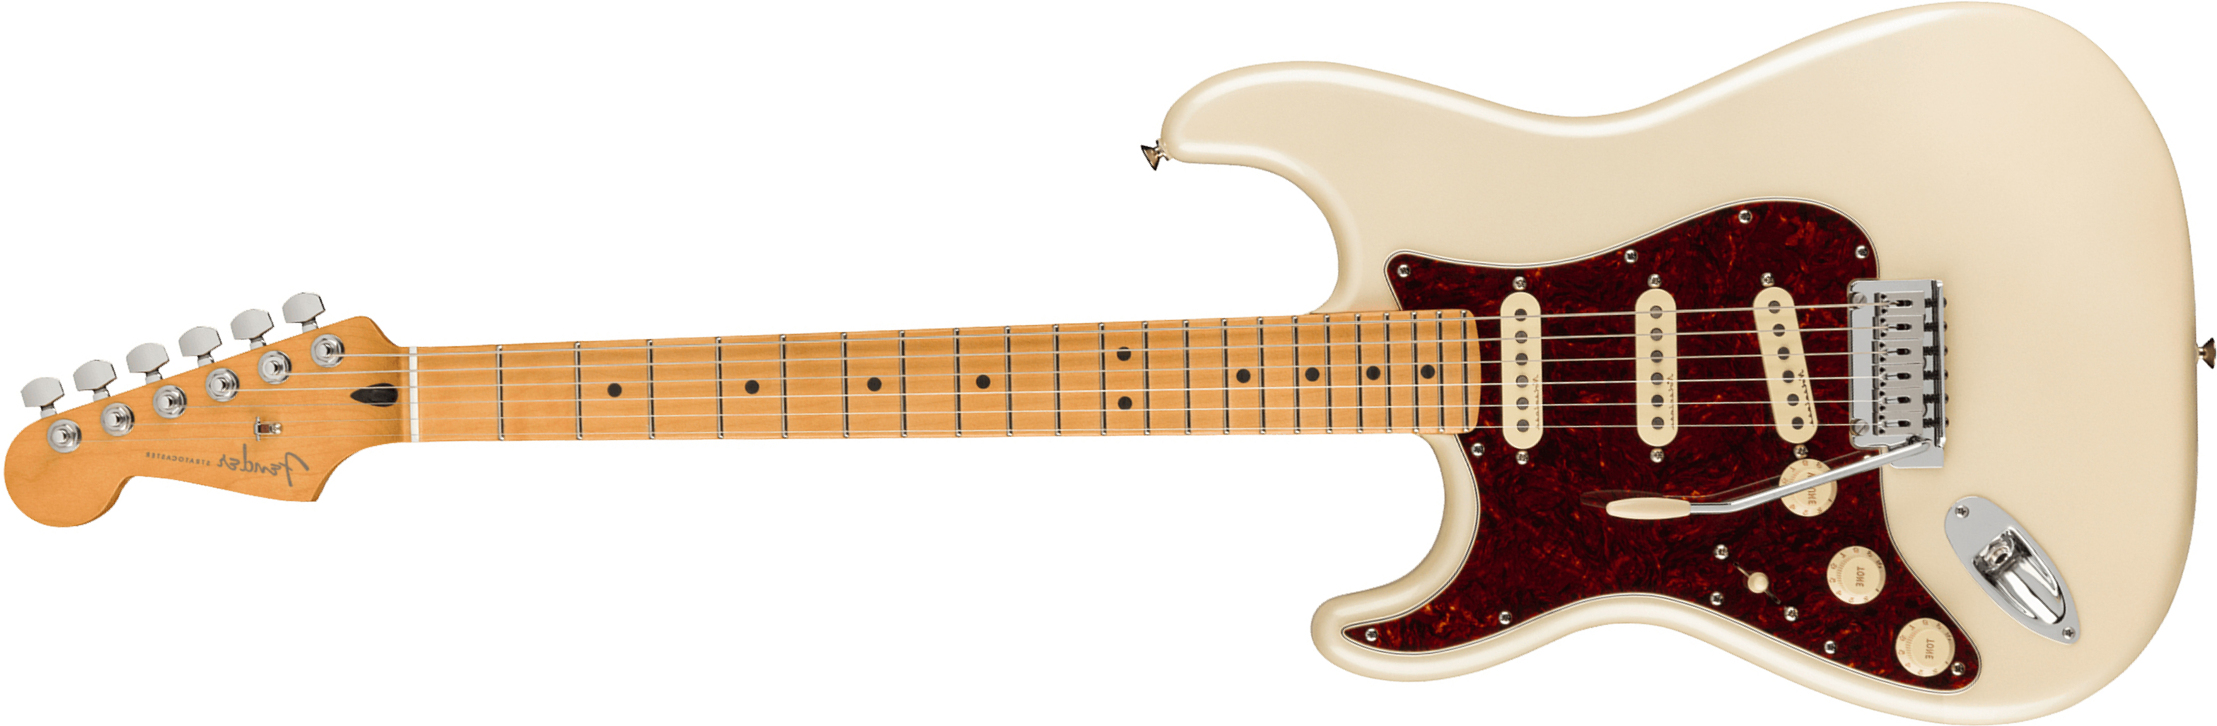 Fender Strat Player Plus Lh Mex Gaucher 3s Trem Mn - Olympic Pearl - E-Gitarre für Linkshänder - Main picture